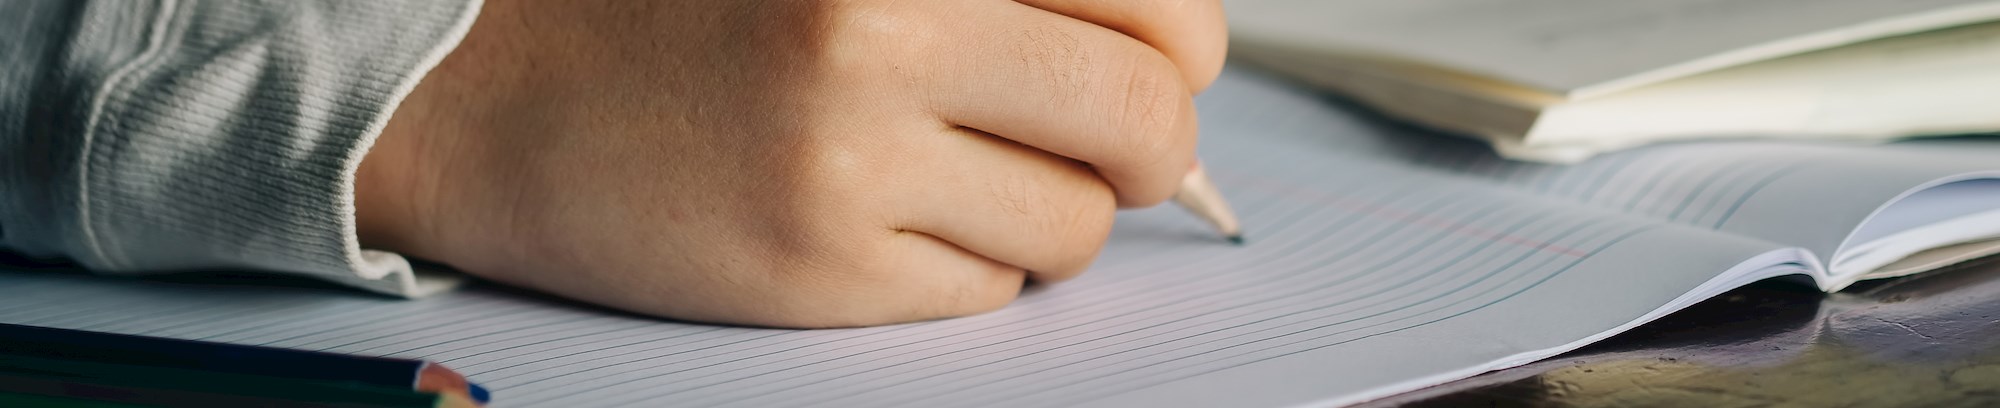 Nærbillede af hånd der skriver med blyant på papir